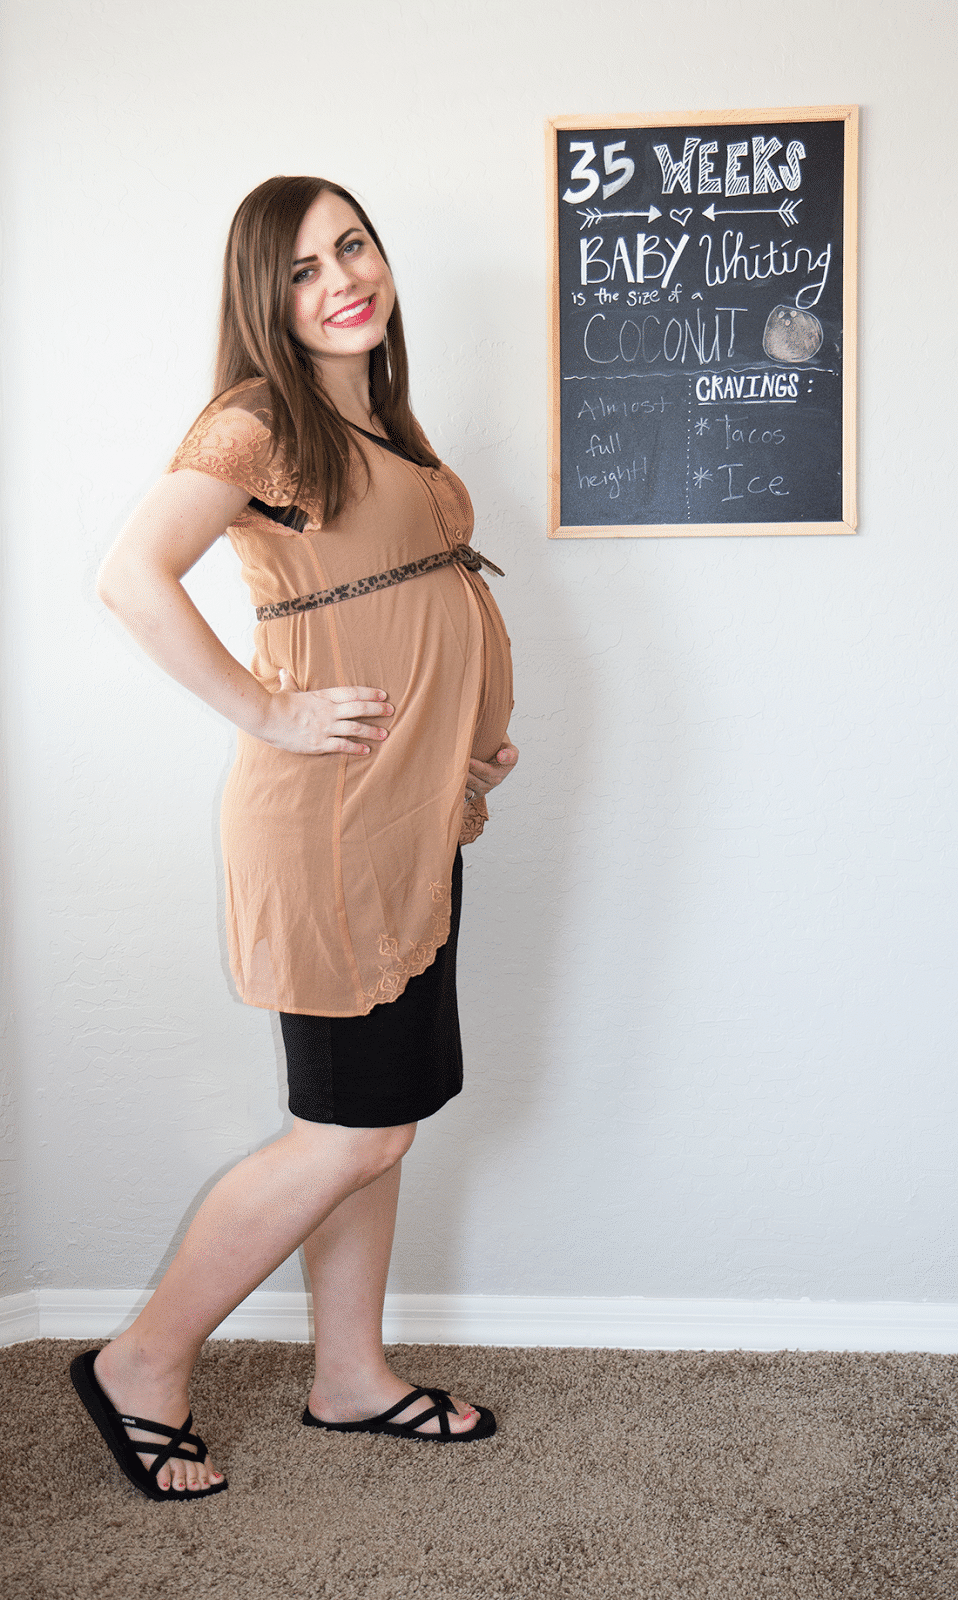 Pregnancy Update: 35 Weeks